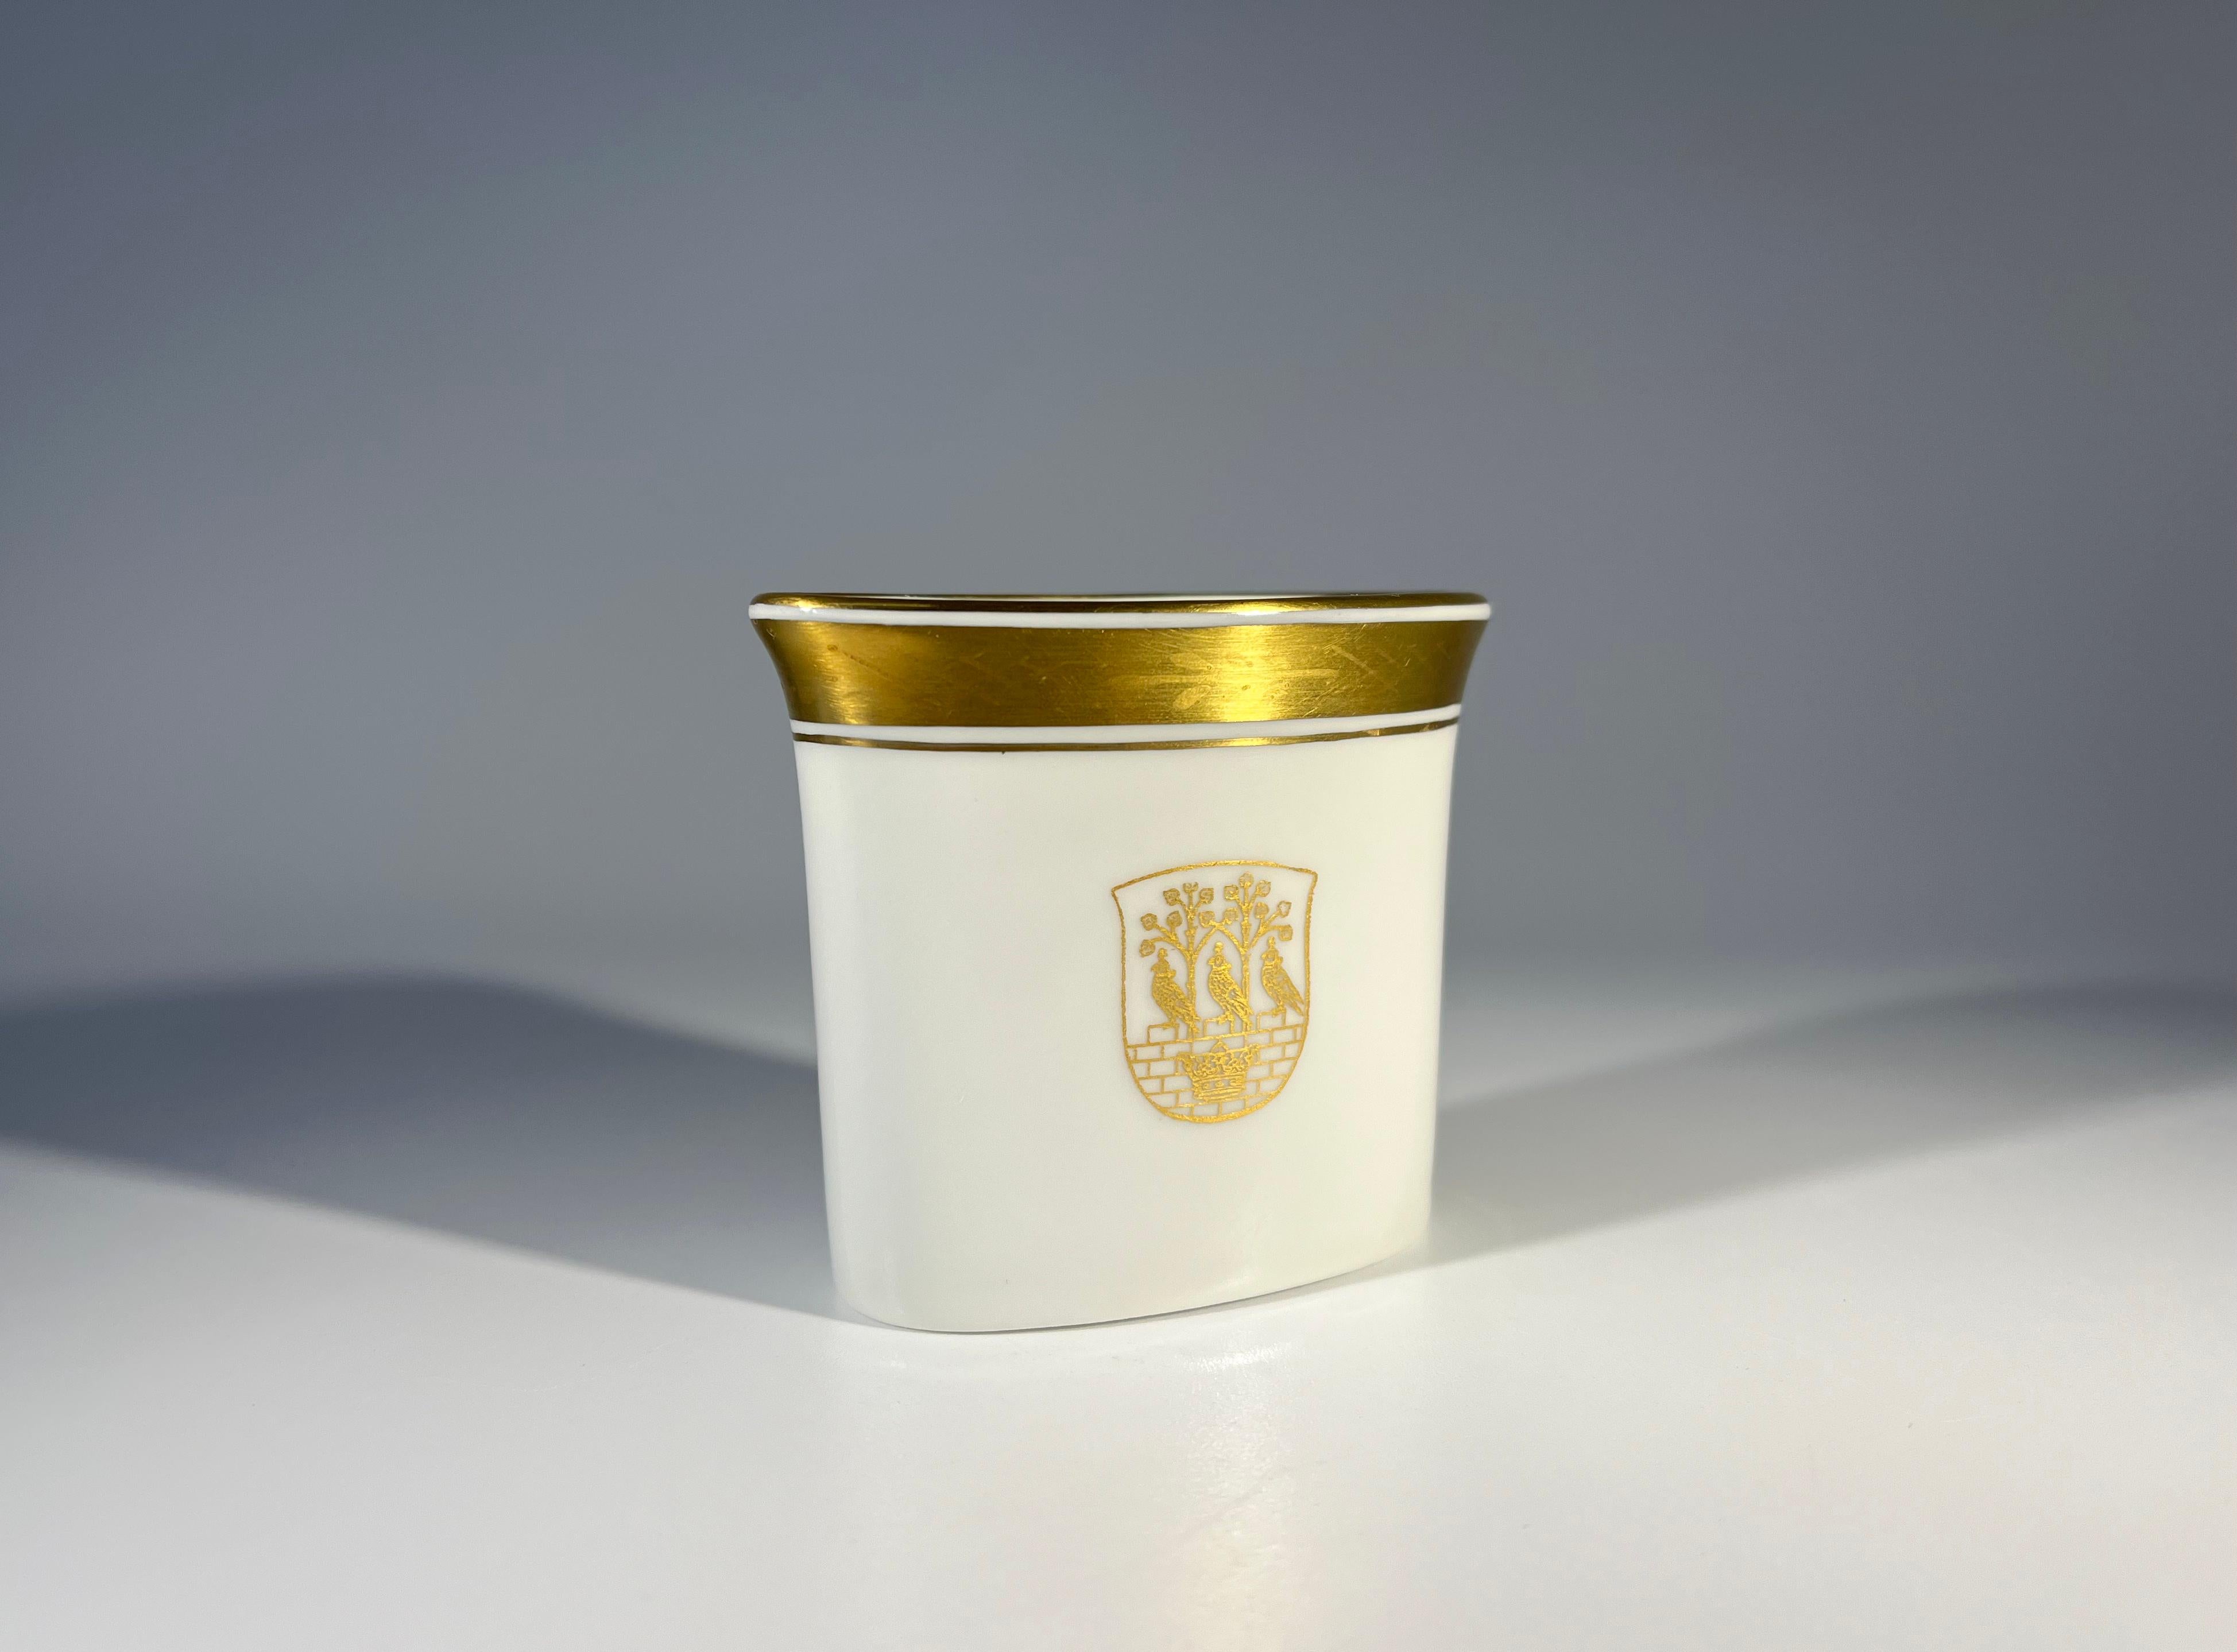 Frederiksberg Coat Of Arms, Royal Copenhagen Porcelain, Gilded Toothpick Holder For Sale 2